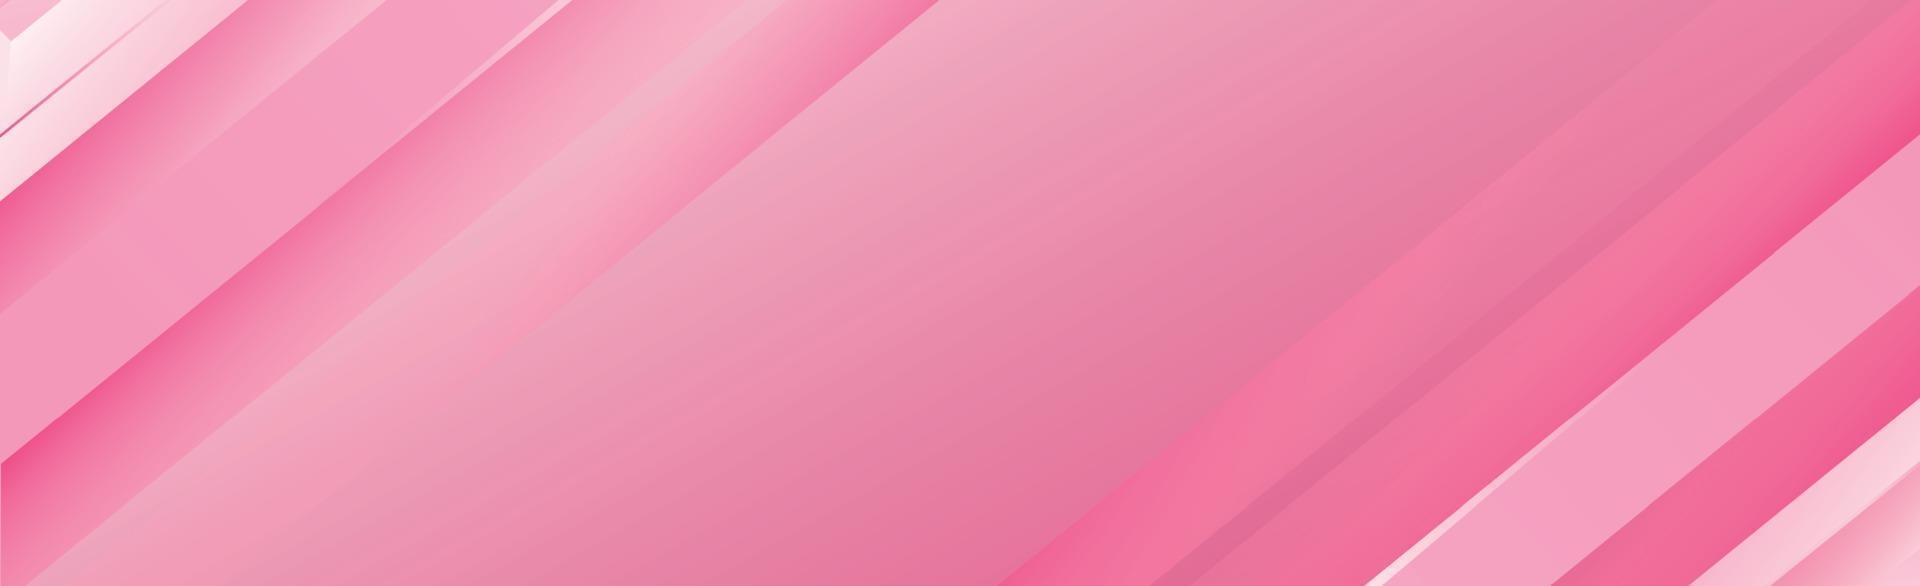 Fondo de línea rosa abstracta con brillo y sombra - vector